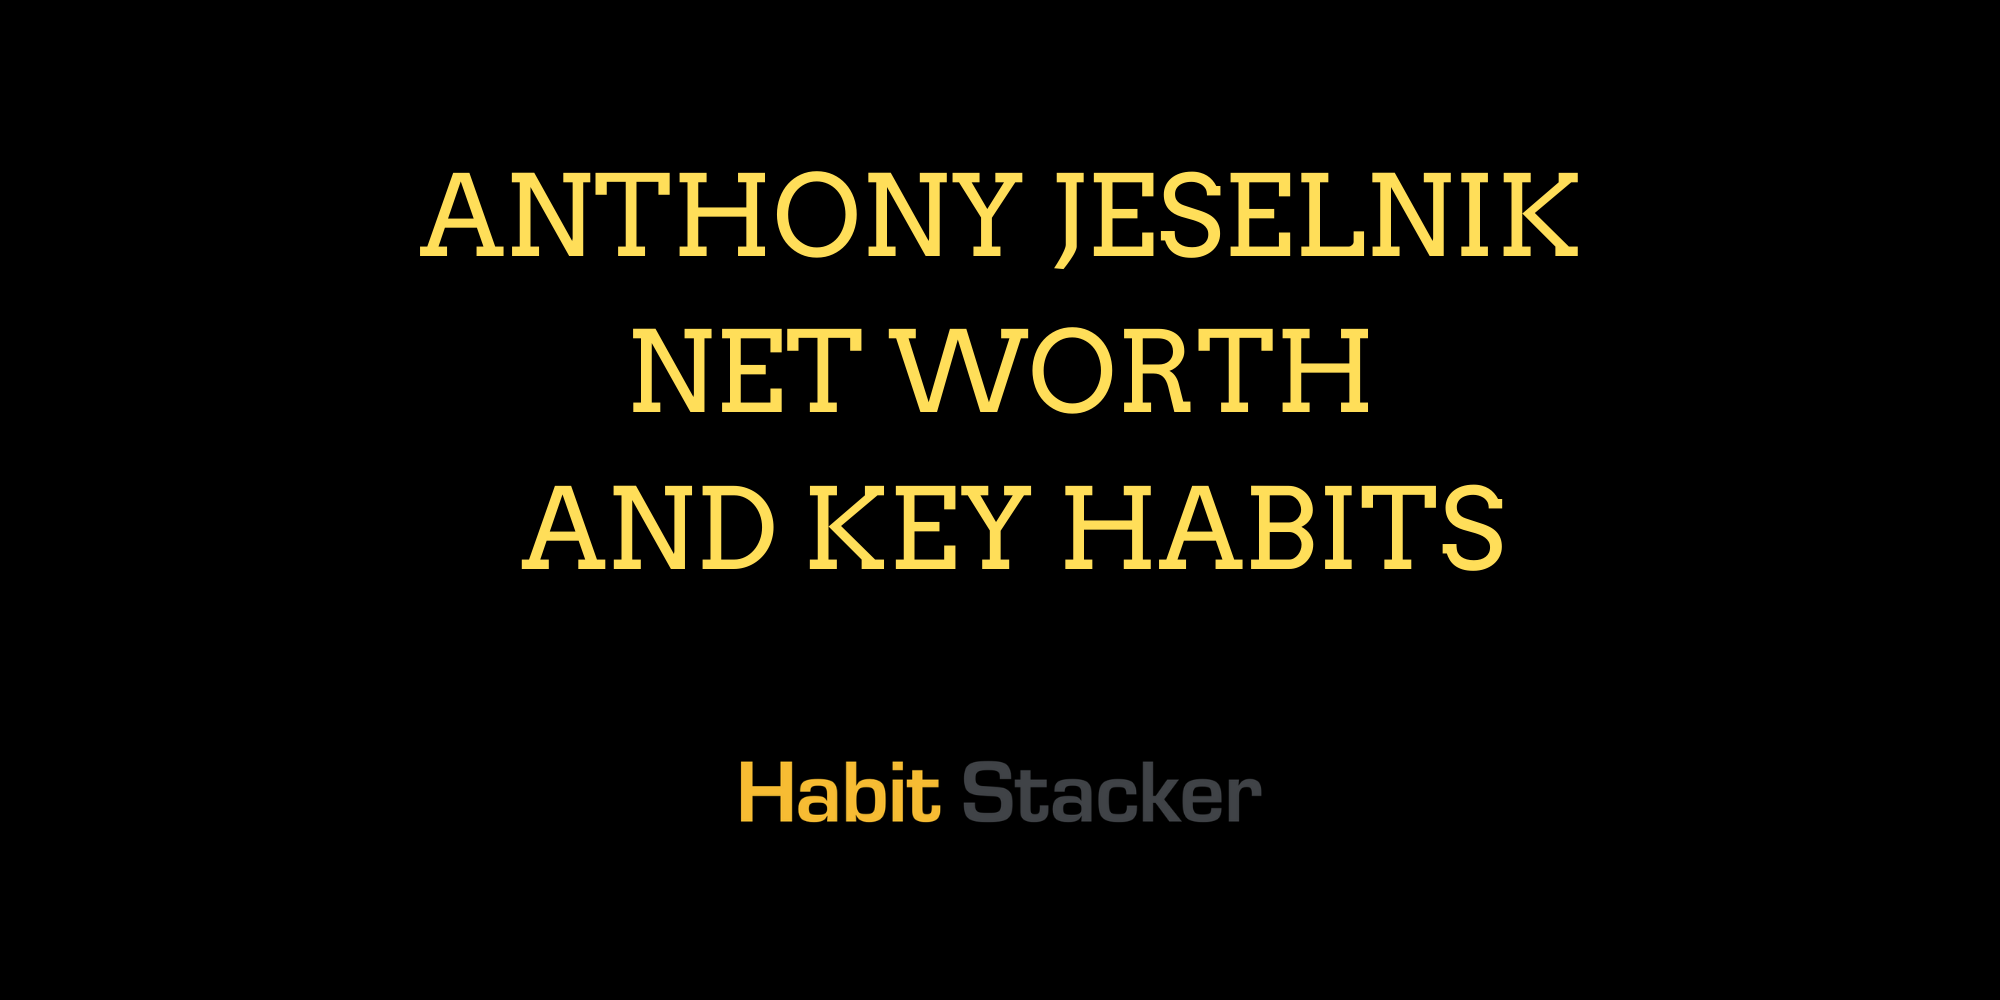 Anthony Jeselnik Net Worth and Key Habits